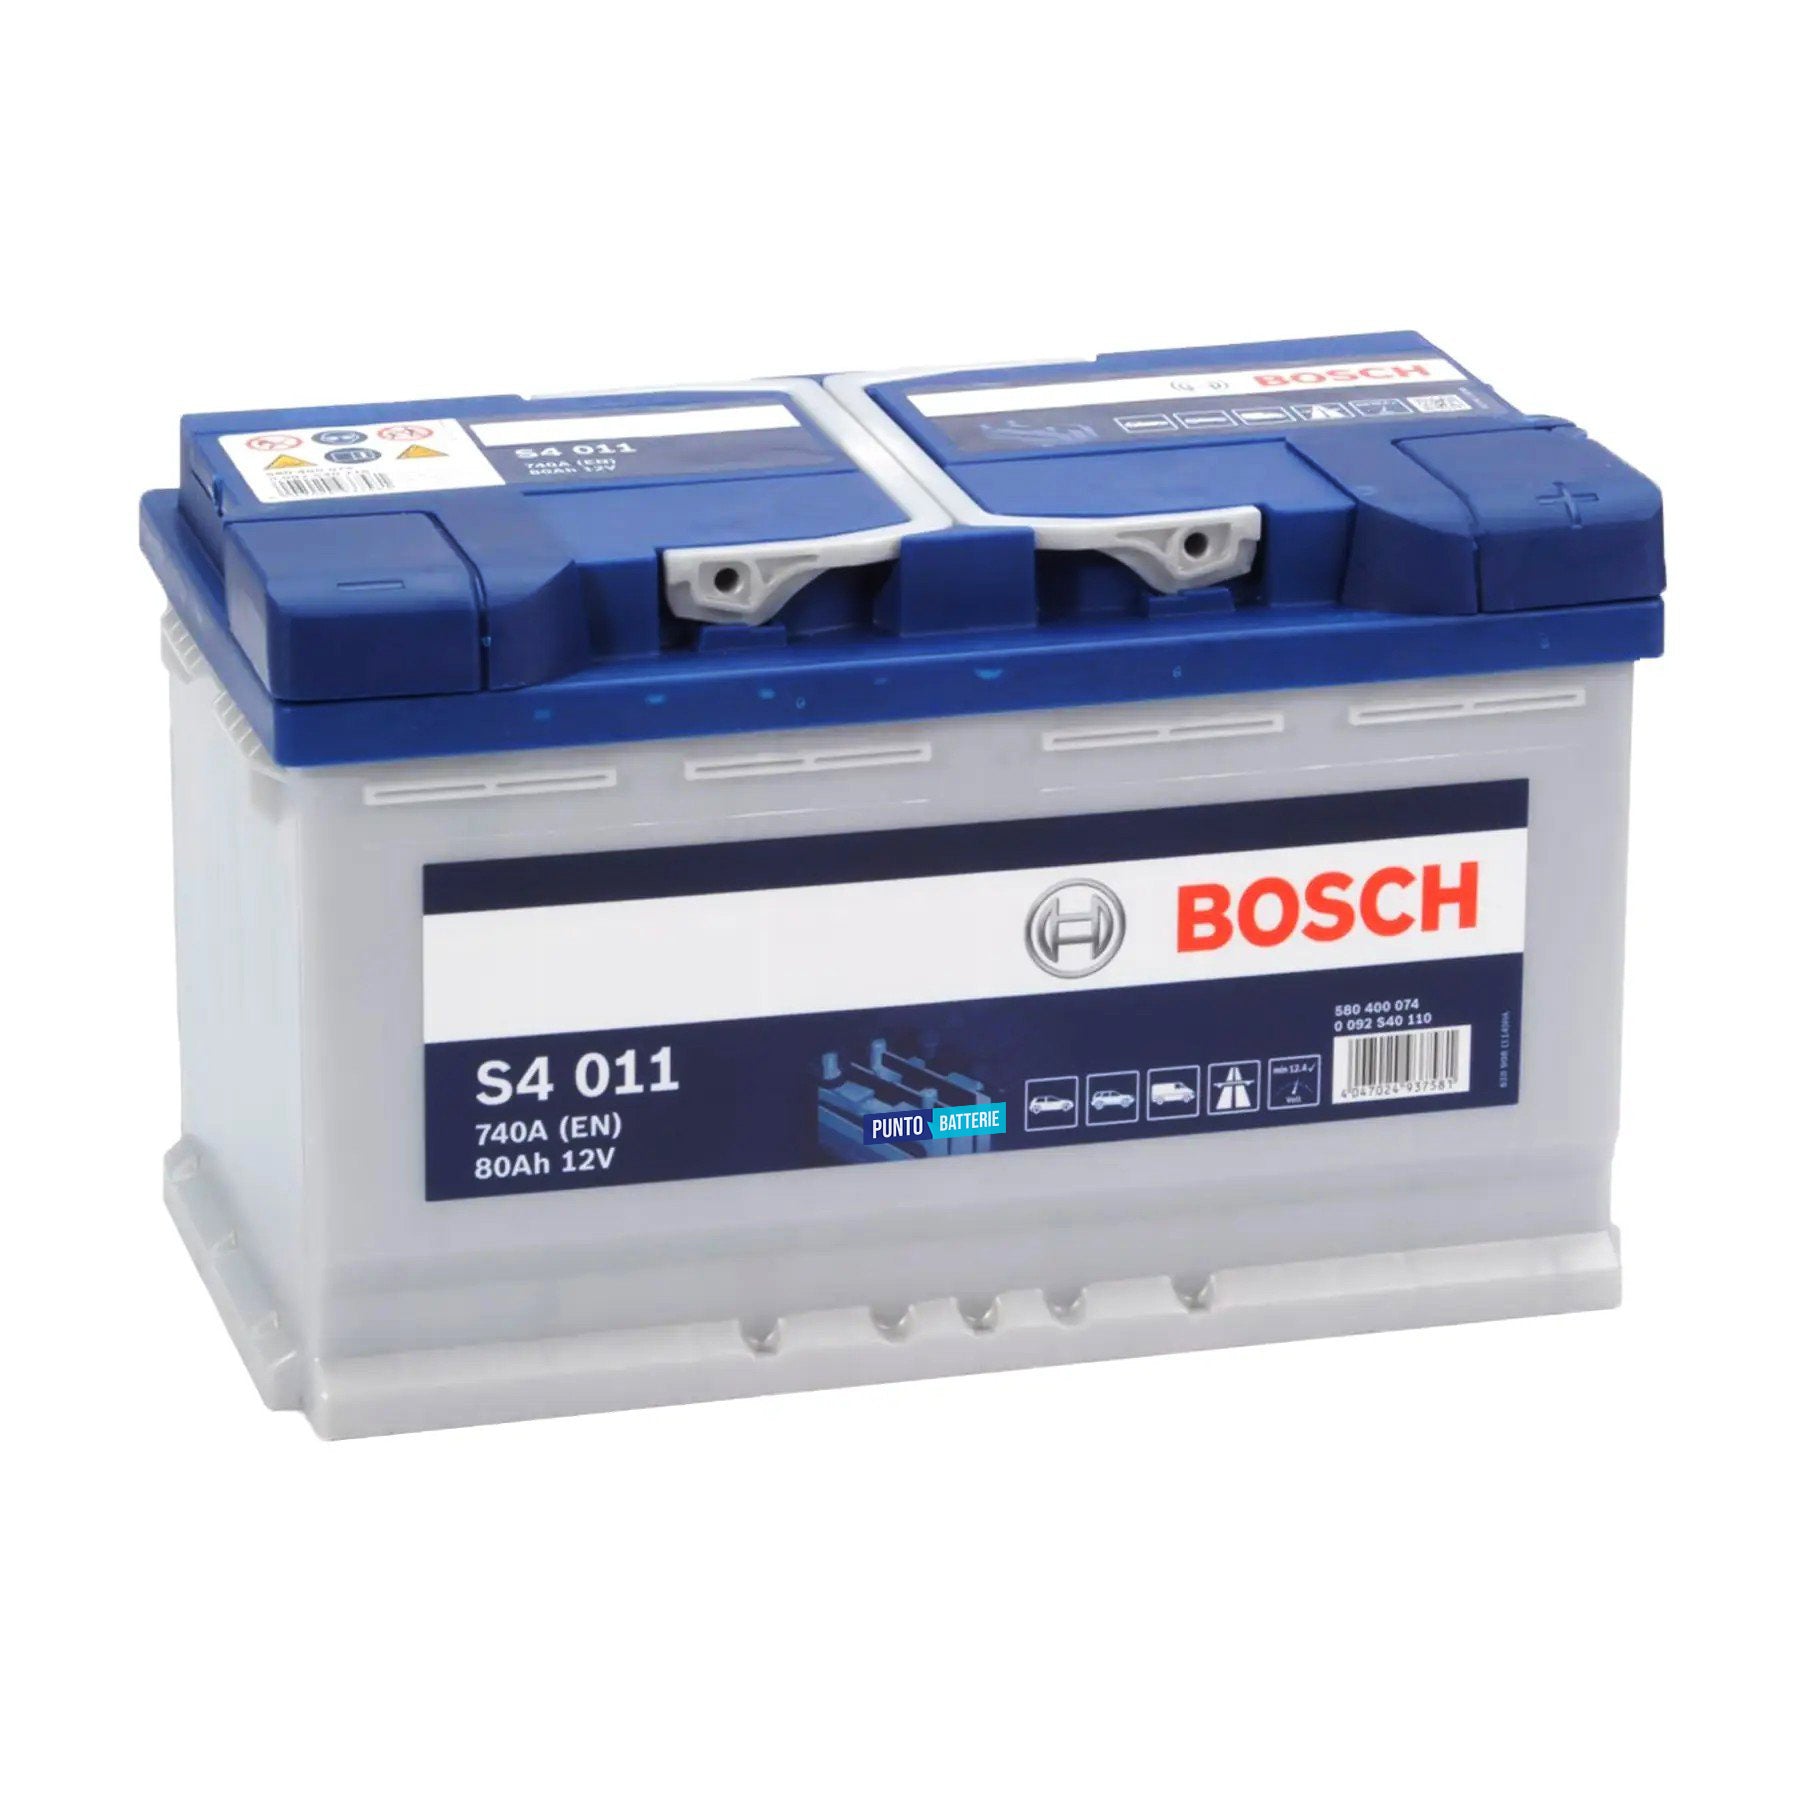 Batteria originale Bosch S4 S4 011, dimensioni 315 x 175 x 190, polo positivo a destra, 12 volt, 80 amperora, 740 ampere. Batteria per auto e veicoli leggeri.